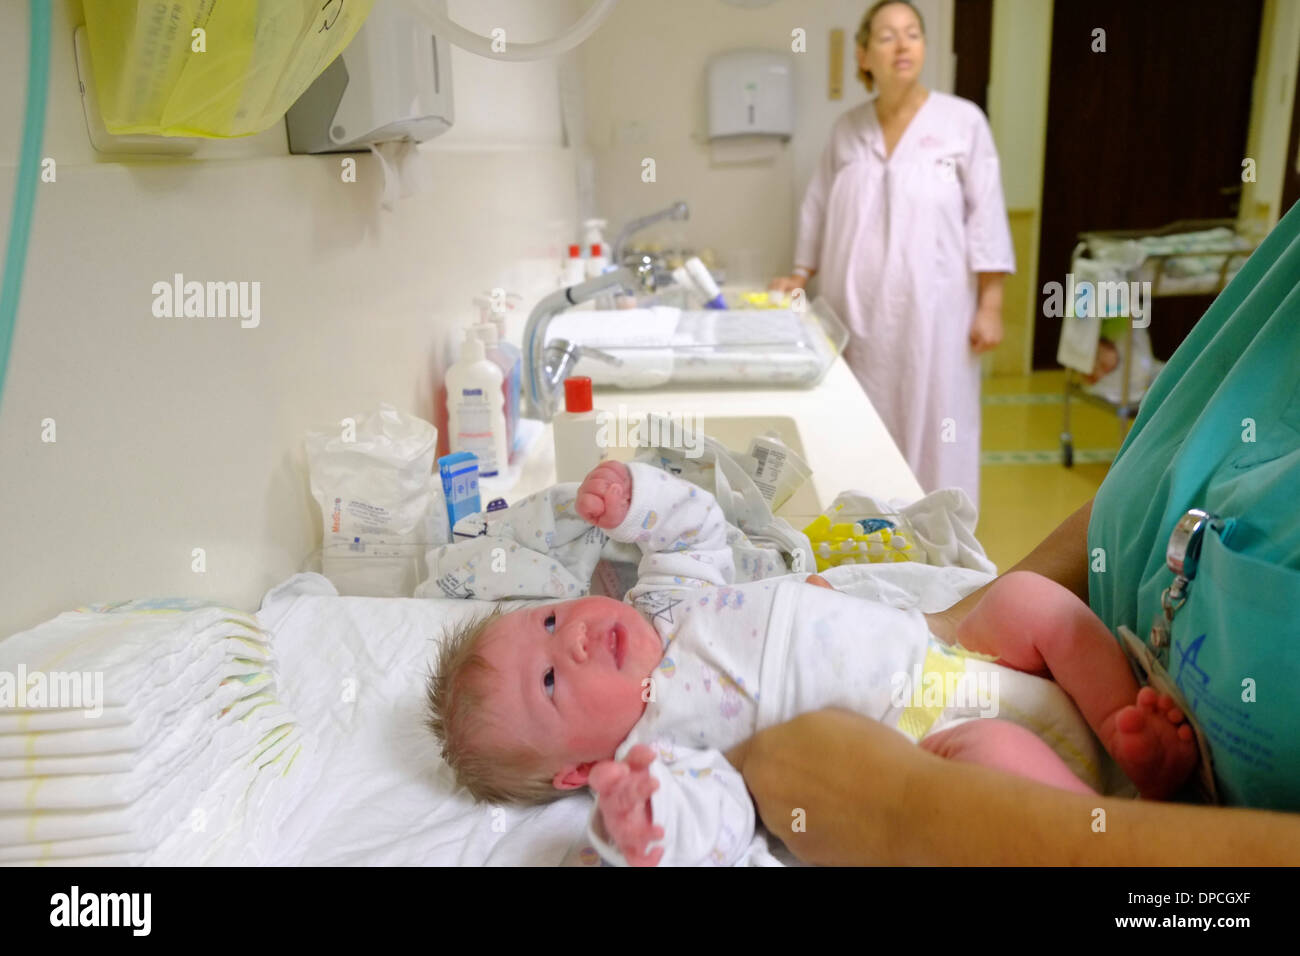 Krankenschwestern Kleider ein neugeborenes Kind in einer Entbindungsstation, während die Mutter Uhren Stockfoto